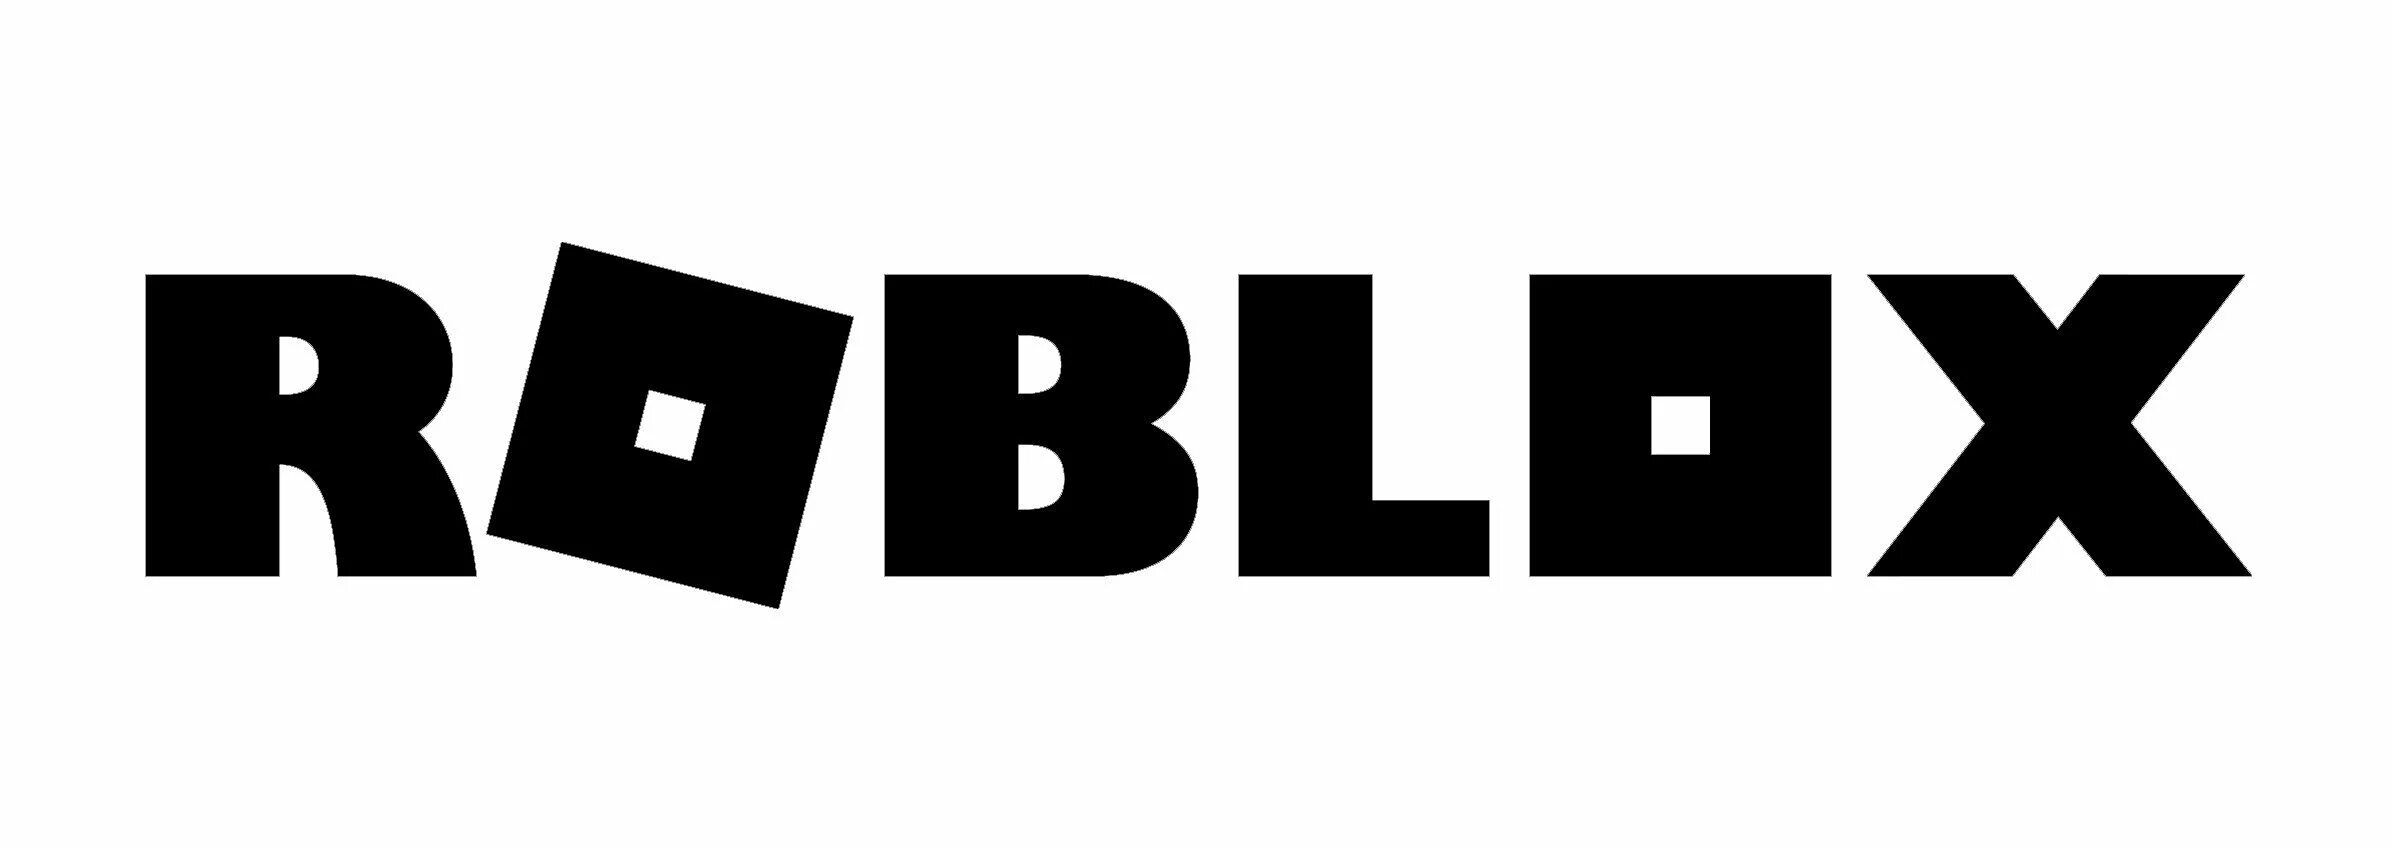 Роблокс на черном фоне. Лого РОБЛОКСА. Roblox логотип. Roblox надпись. Логотипы черного цвета.